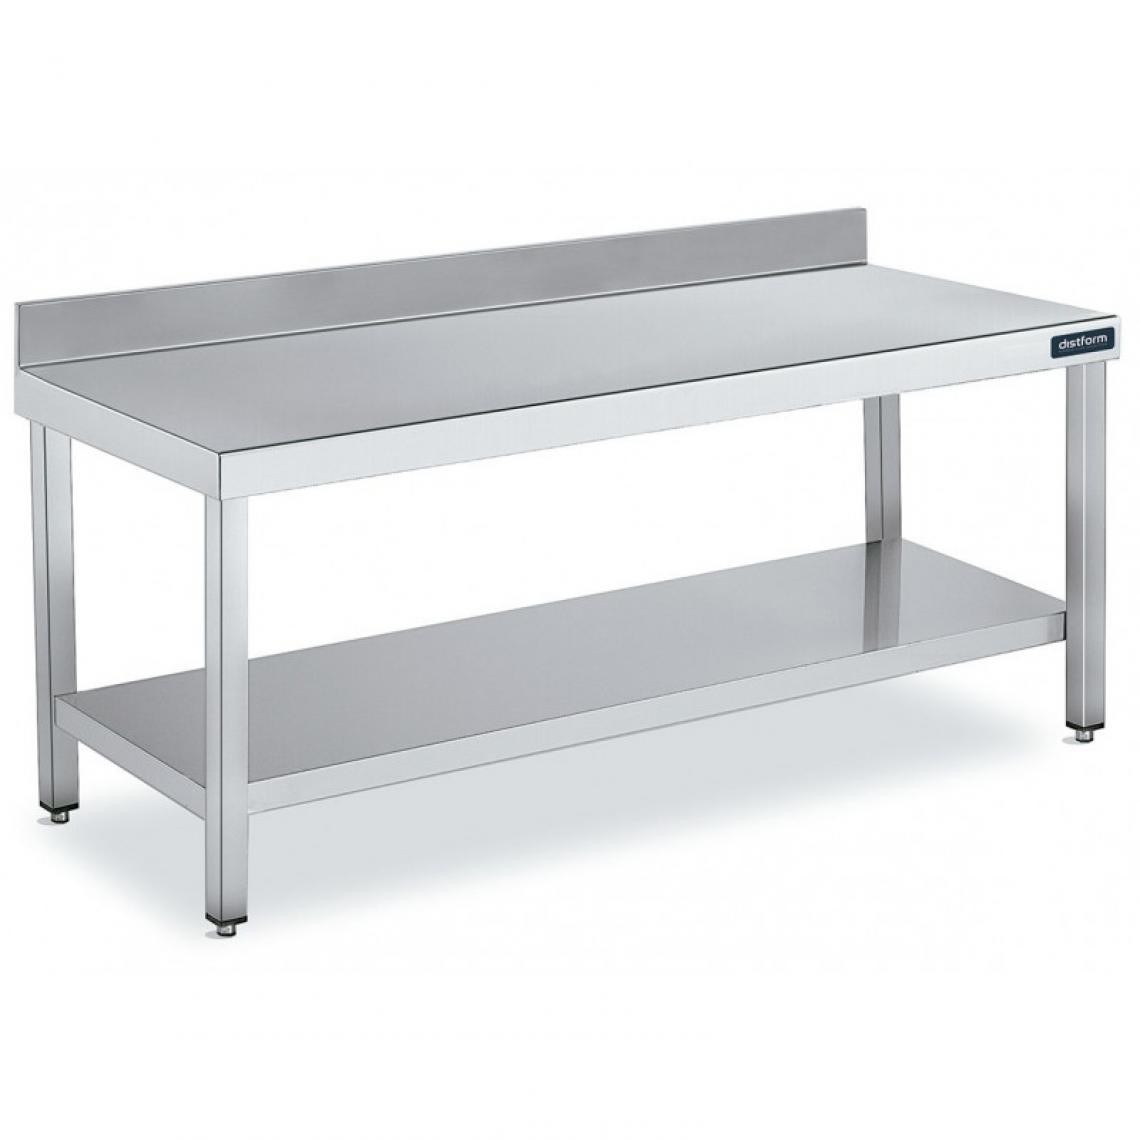 DISTFORM - Table Adossée en Inox avec 1 étagère Profondeur 700 mm - Distform - Acier inoxydable2000x700 - Tables à manger